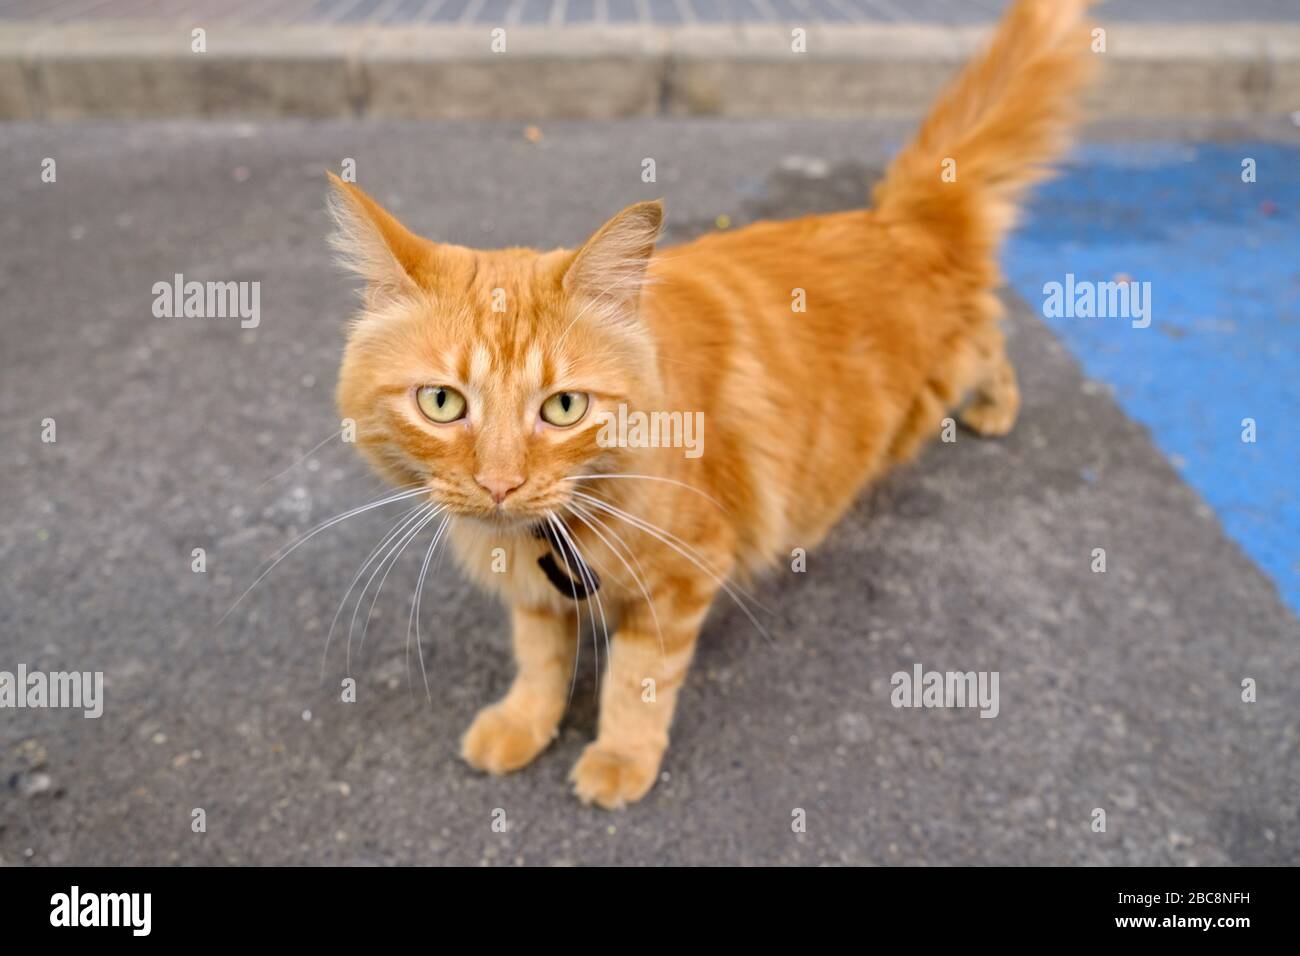 Adorabile gatto rosso tabby in strada, amichevole e felice modello per la fotografia di magazzino. Foto Stock